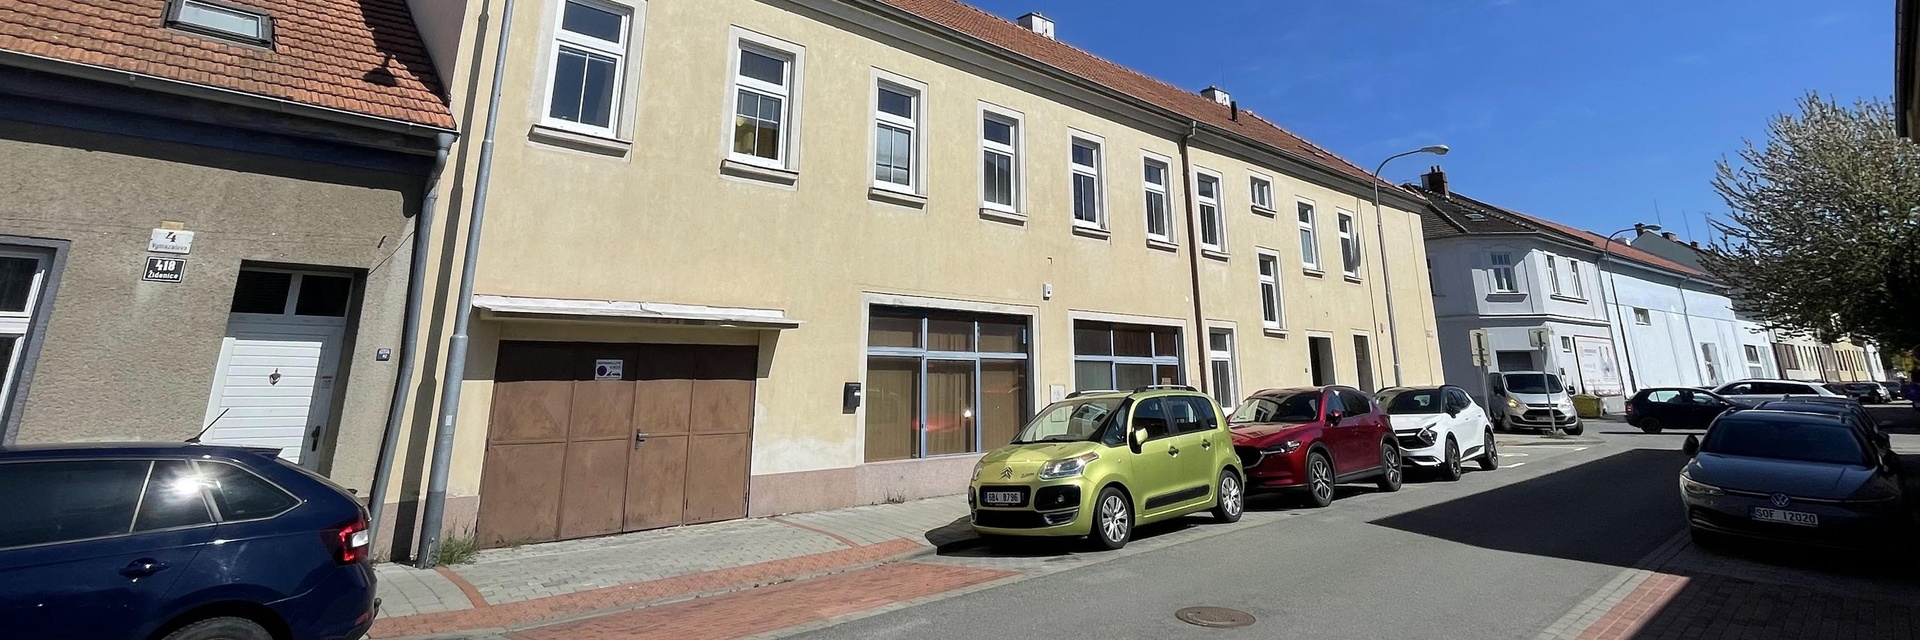 Prodej rohového nájemního domu v Brně - Židenicích - 427 m²